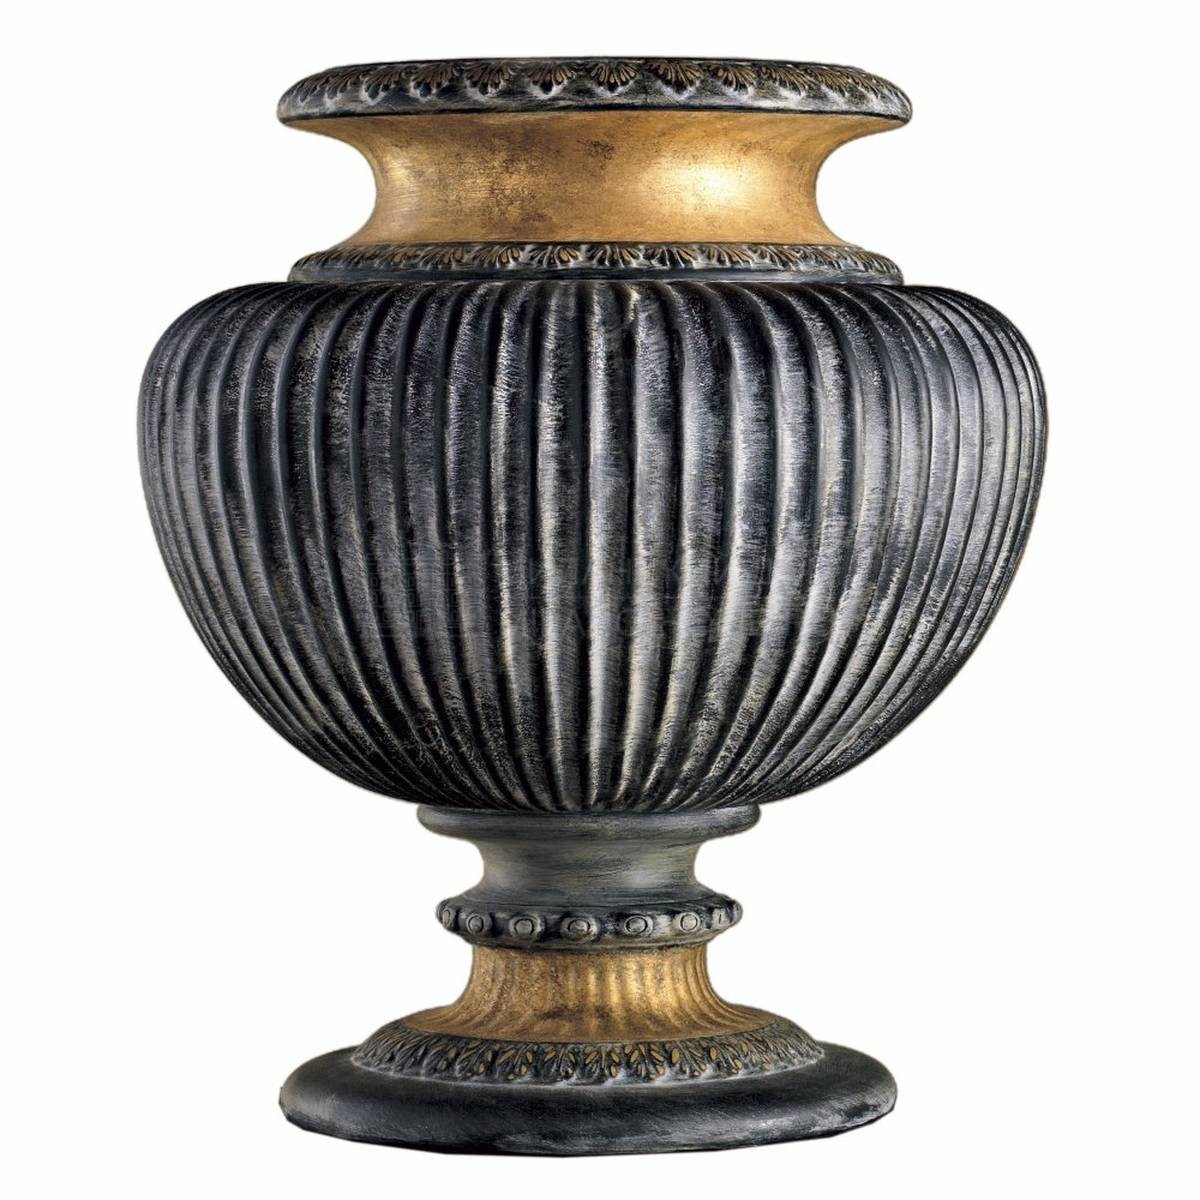 Ваза Perseo vase из Италии фабрики MARIONI